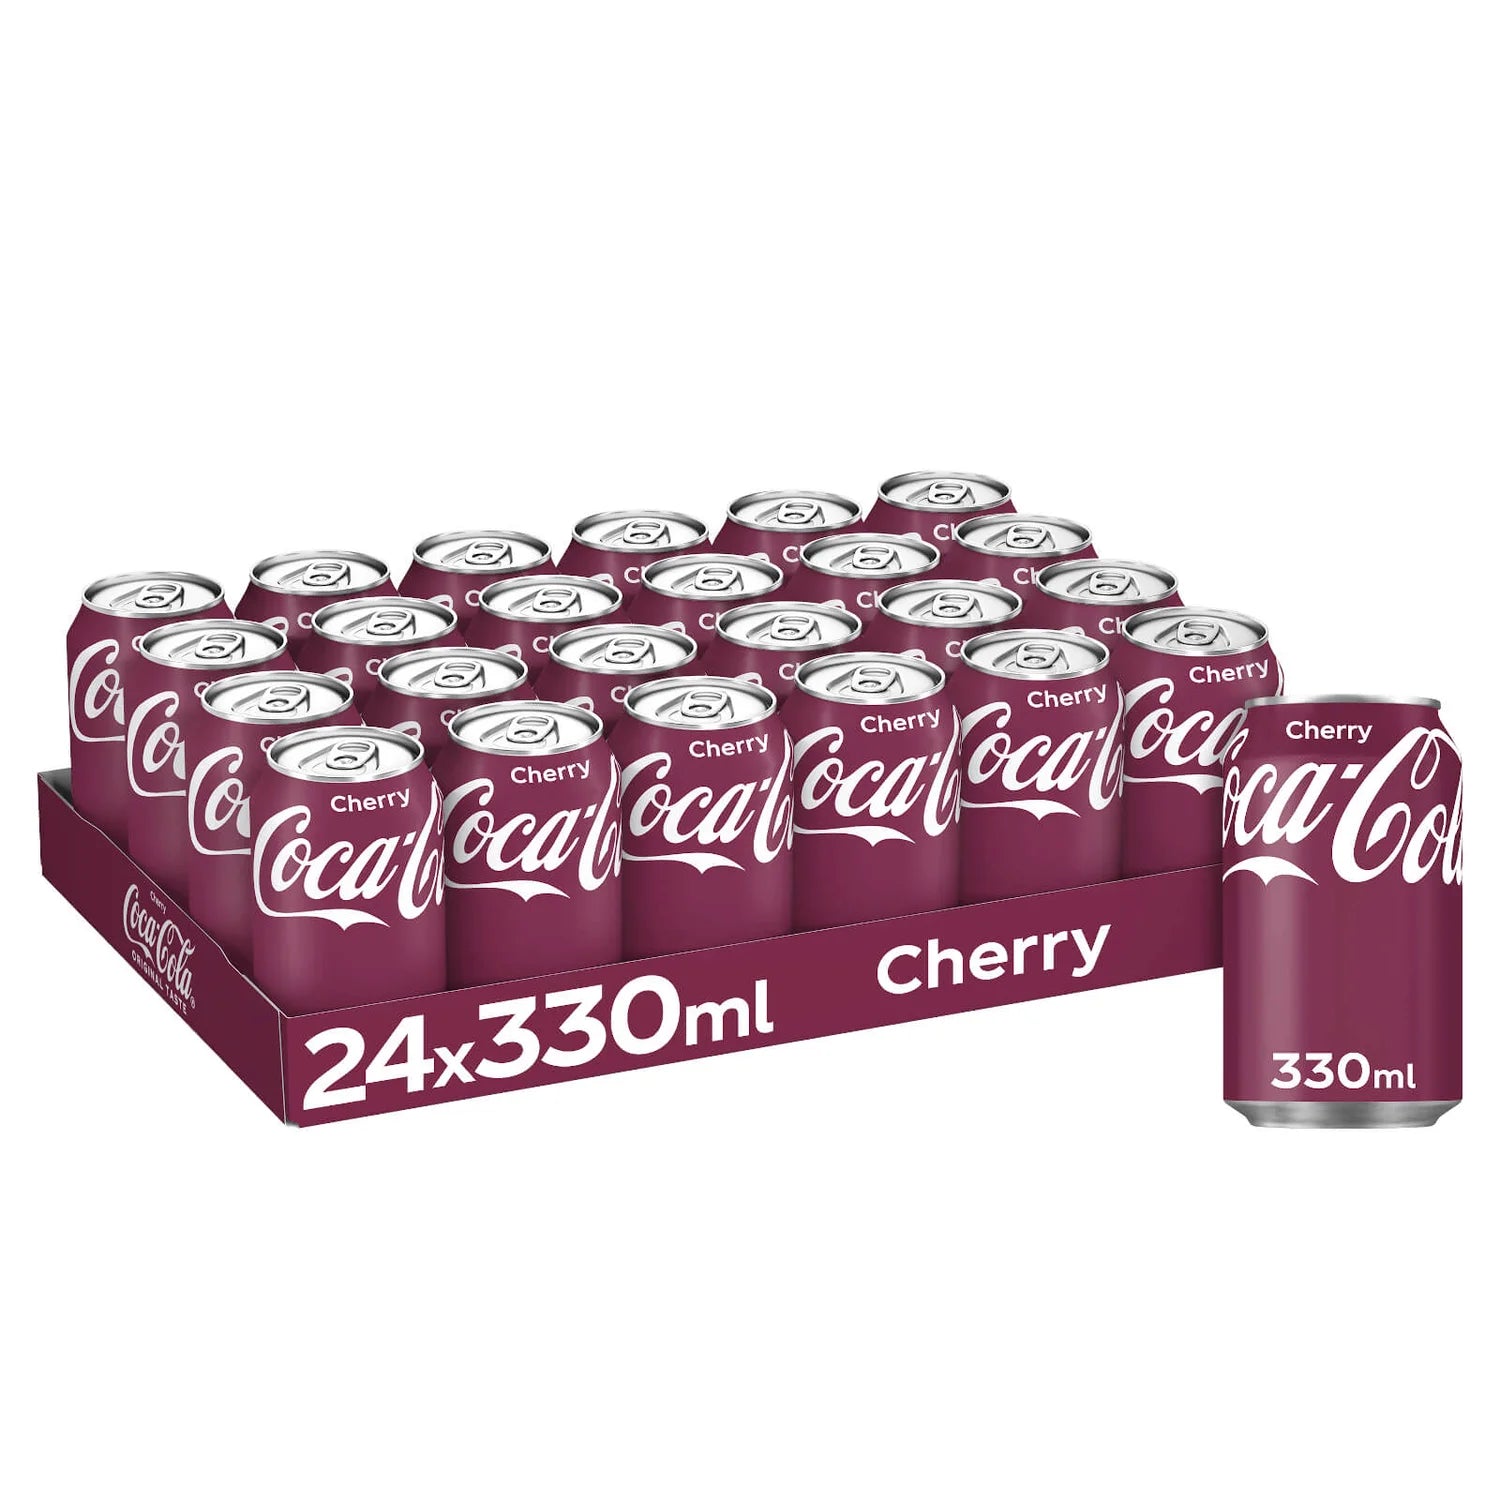 Coca-Cola Cherry - 330ml - Case of 24